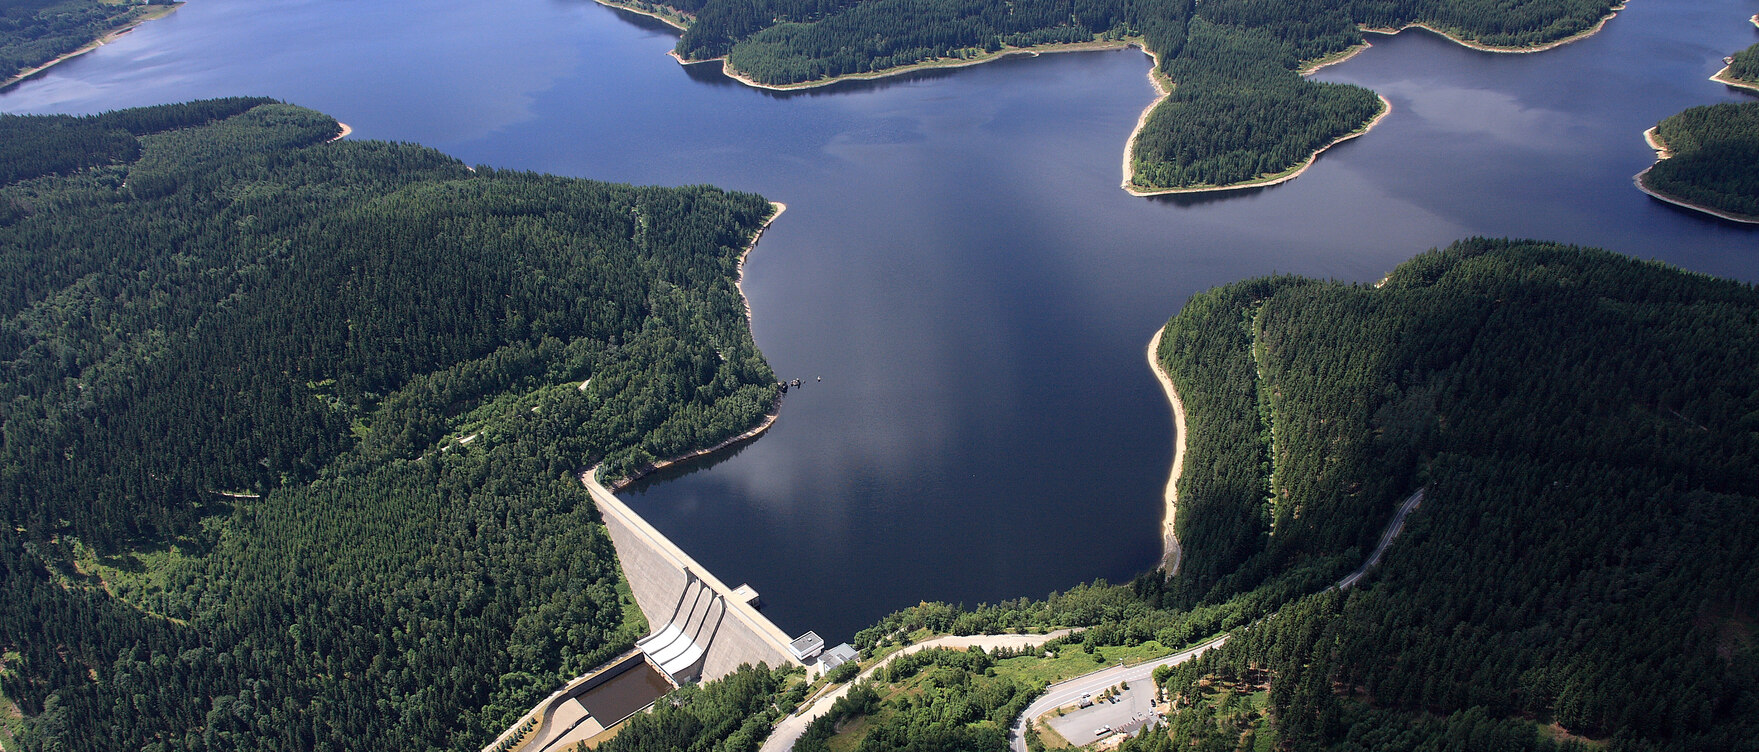 Luftbild Talsperre Eibenstock mit Stausee und Staumauer